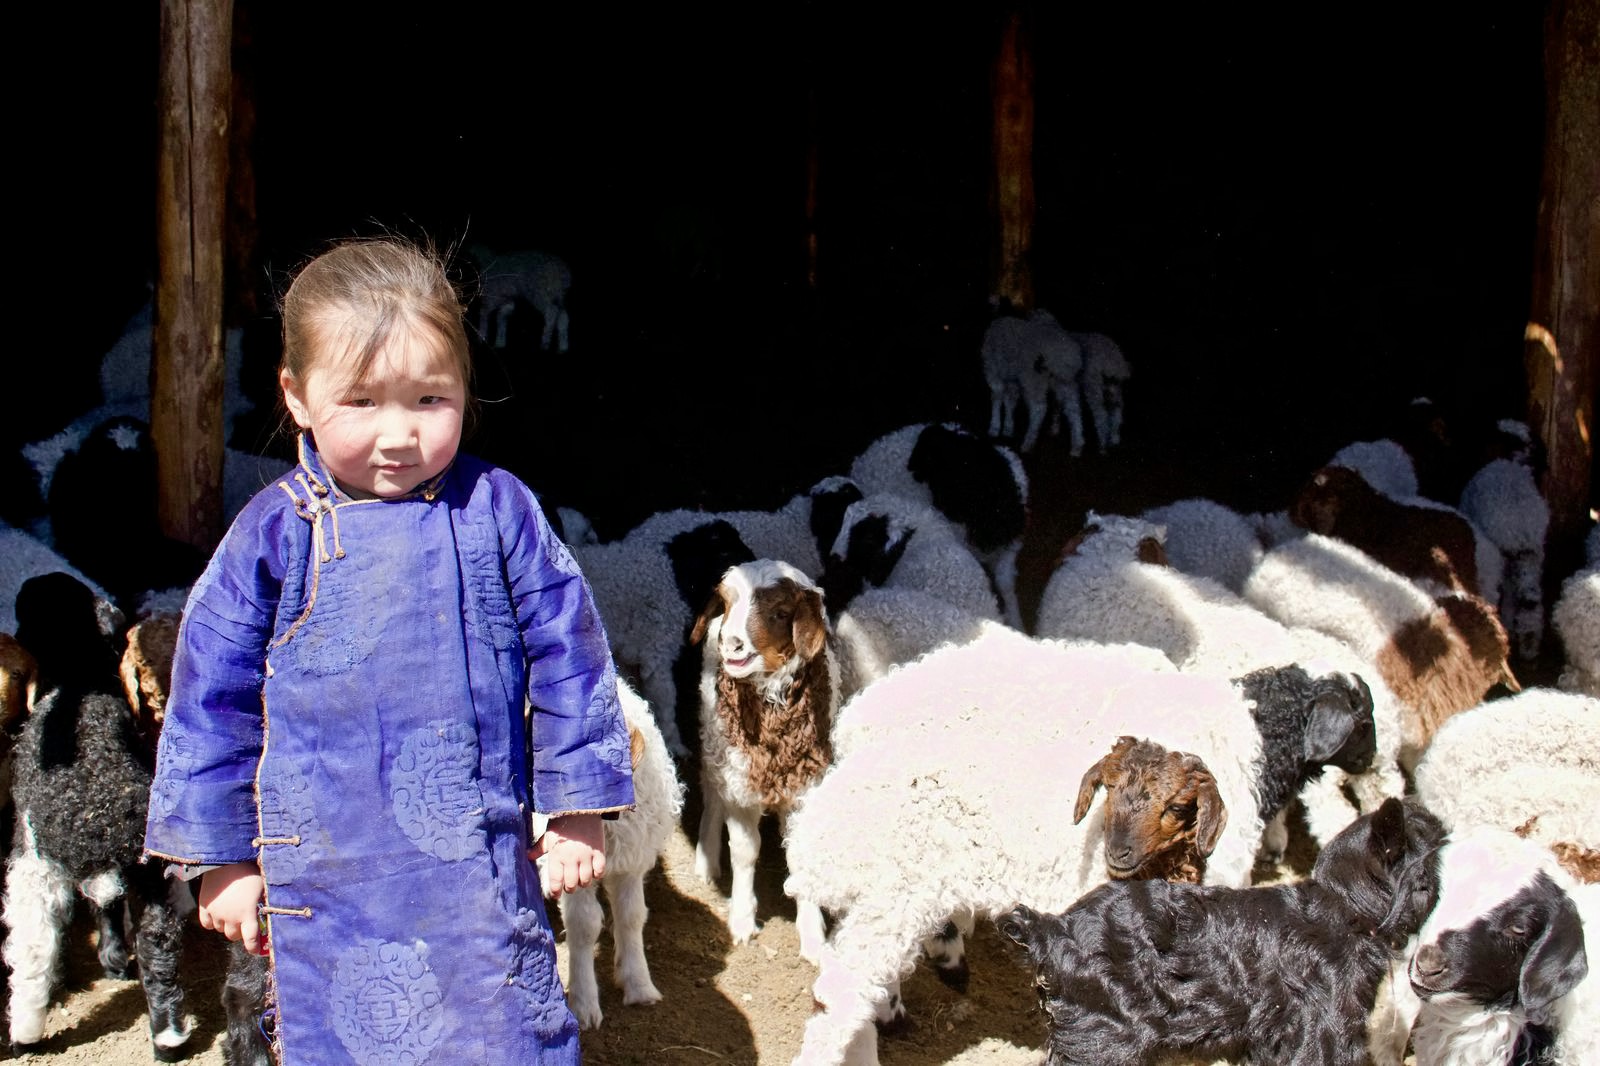 Mongolian child